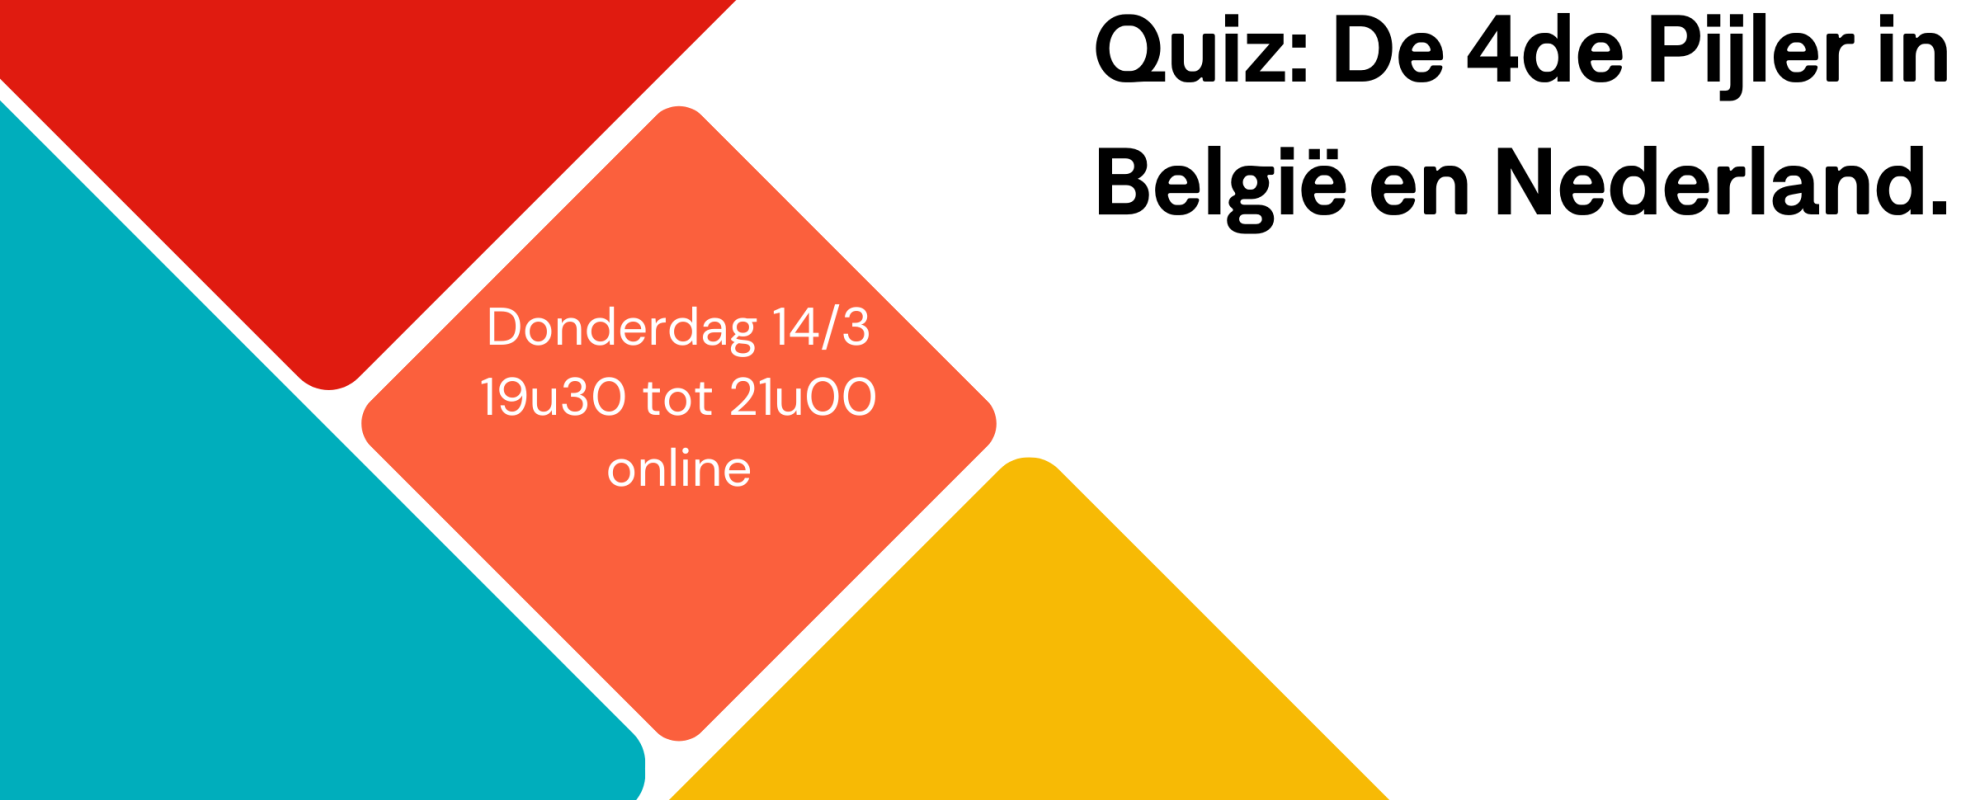 De grote Nederland-België quiz over 4de Pijler